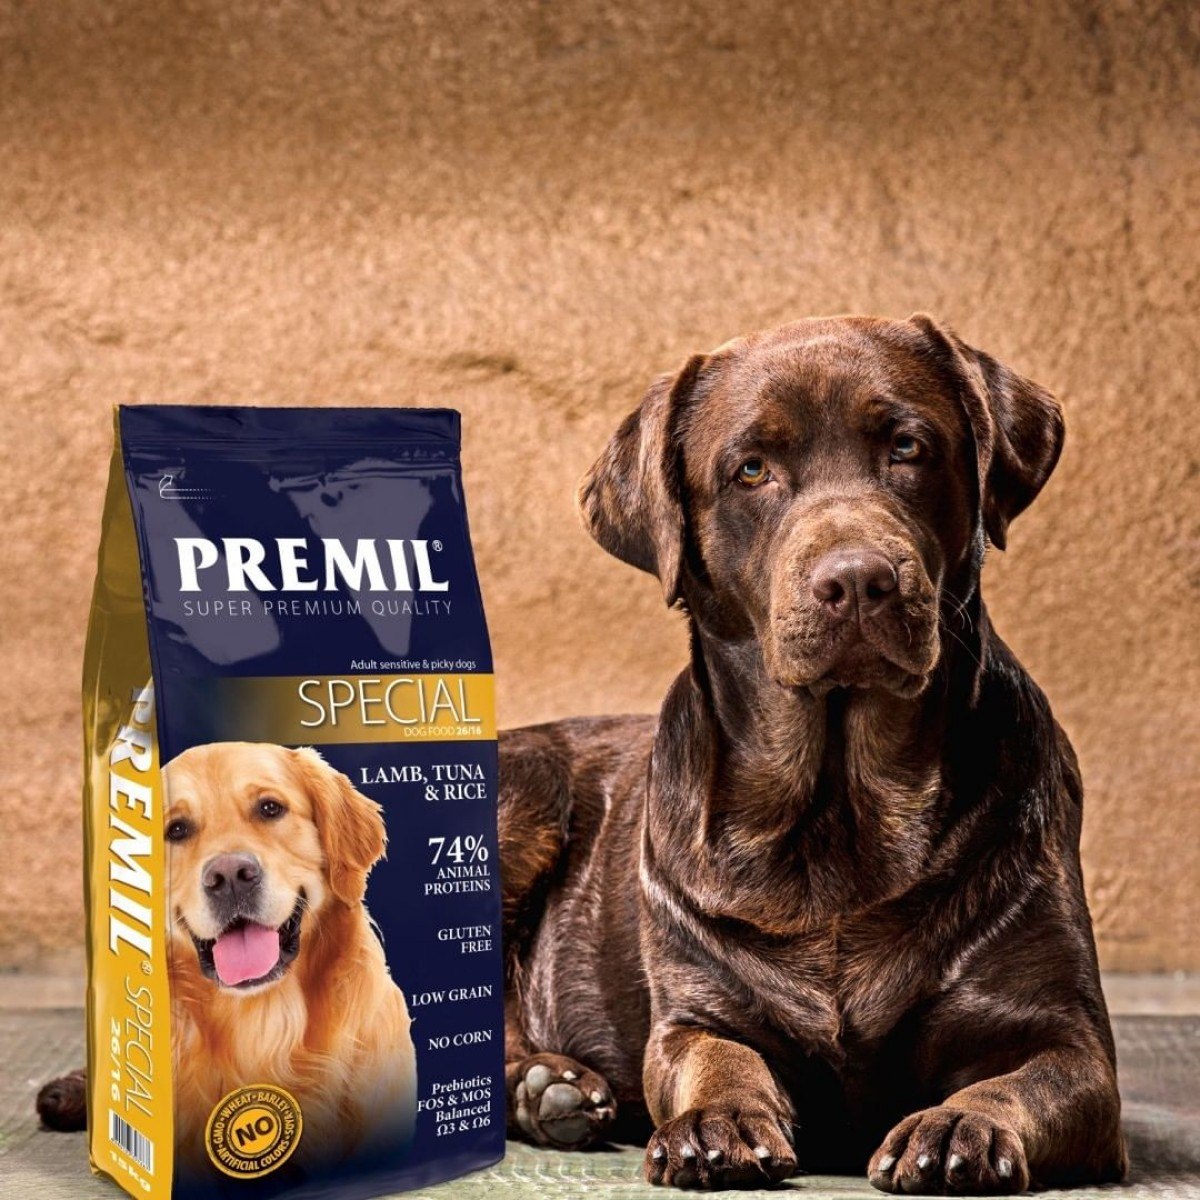 Корм супер премиум для собак мелких пород. Корм для собак Premil Special. Premil Special гипоаллергенный корм для собак. Собачий корм супер премиум класса. Корма супер премиум класса для собак.